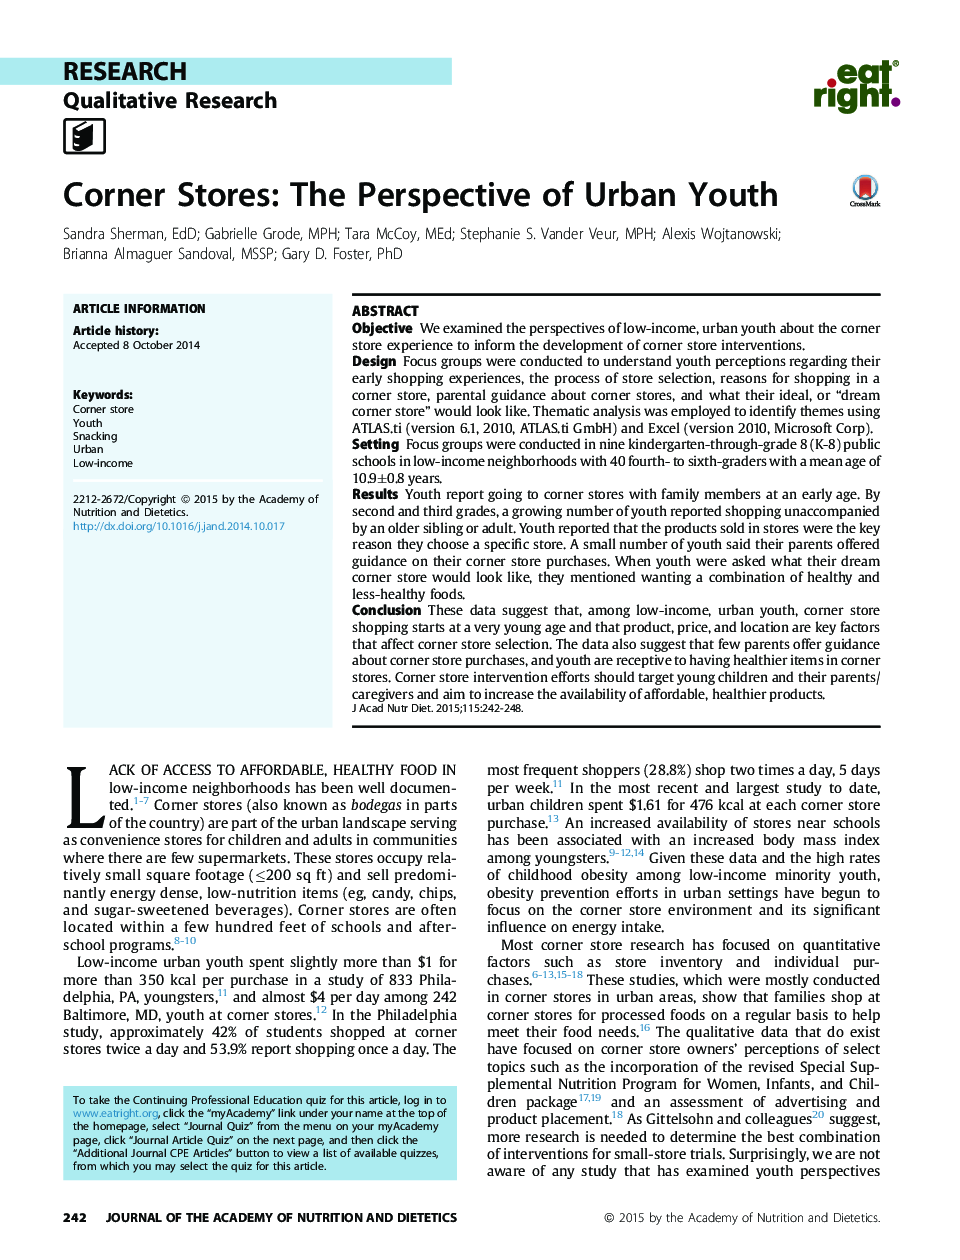 مغازه های گوشه: چشم انداز جوانان شهری 